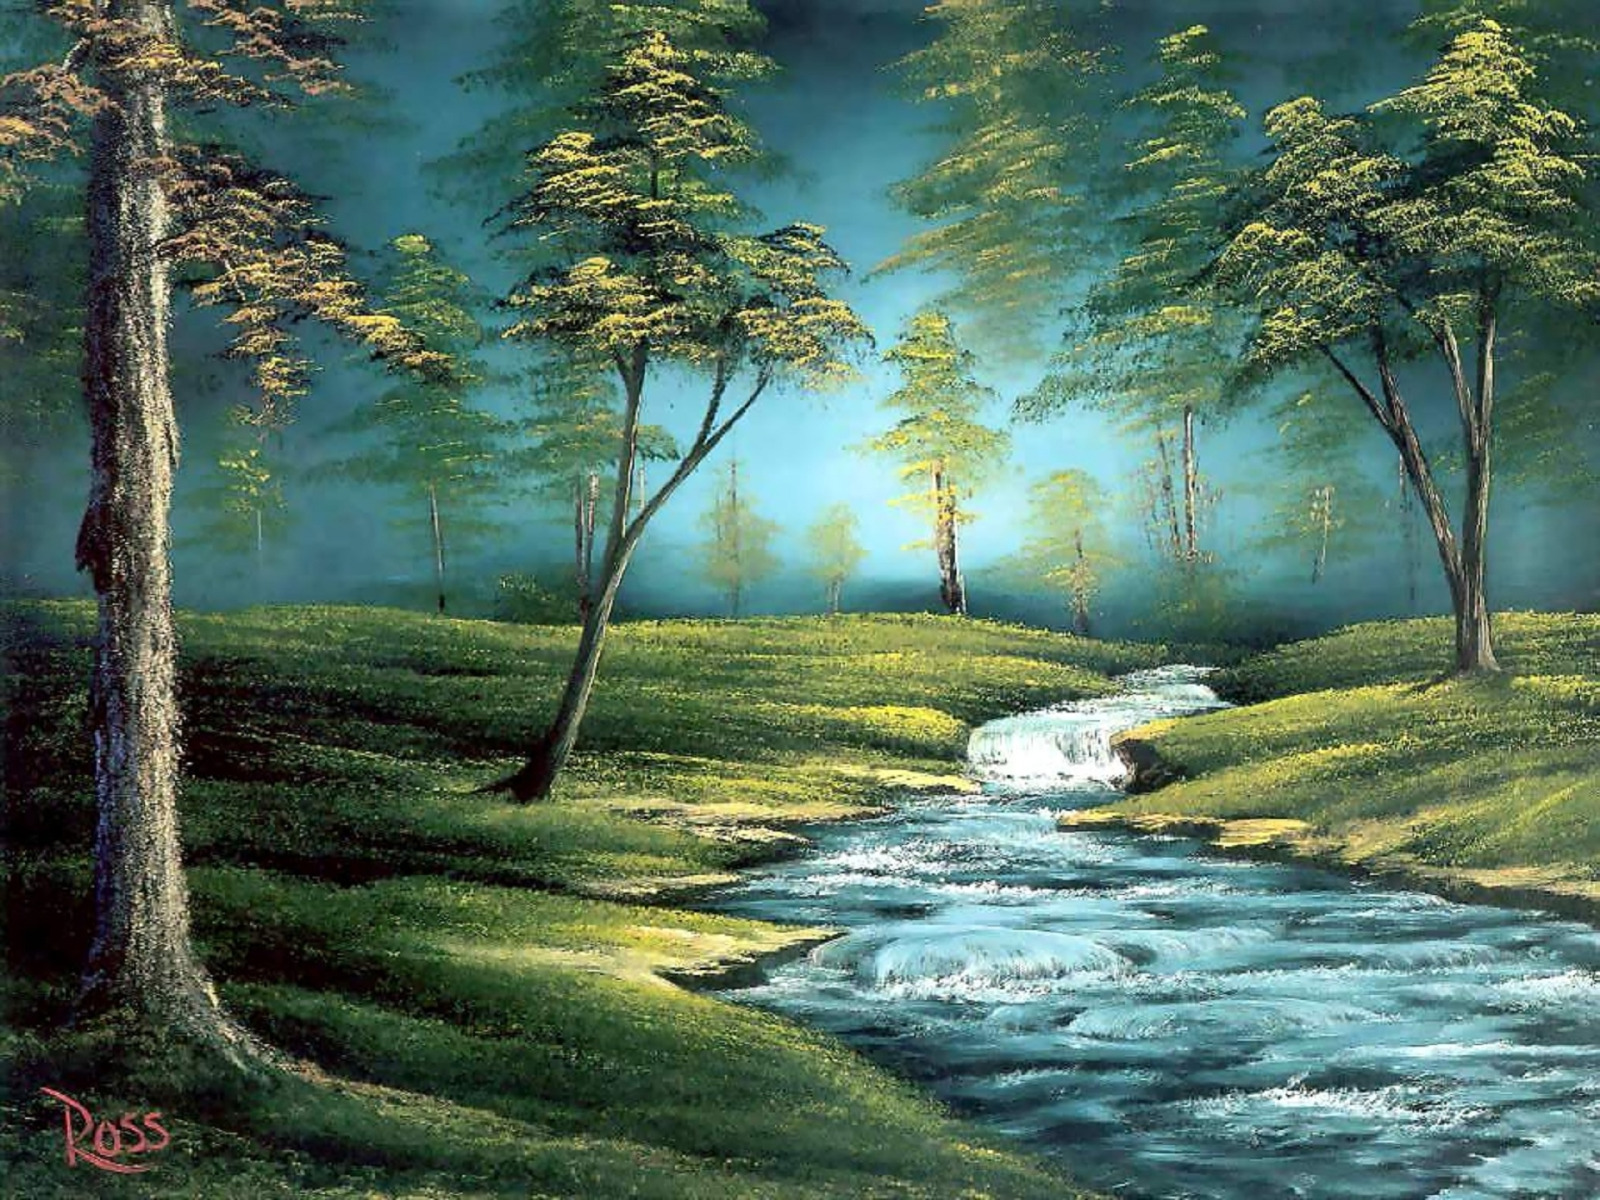 Нет это звонко тонко в ручье. Художник Боб Росс картины. Лесной пейзаж Боб Росс. Американский художник пейзажист Боб Росс. Боб Росс весенний пейзаж.